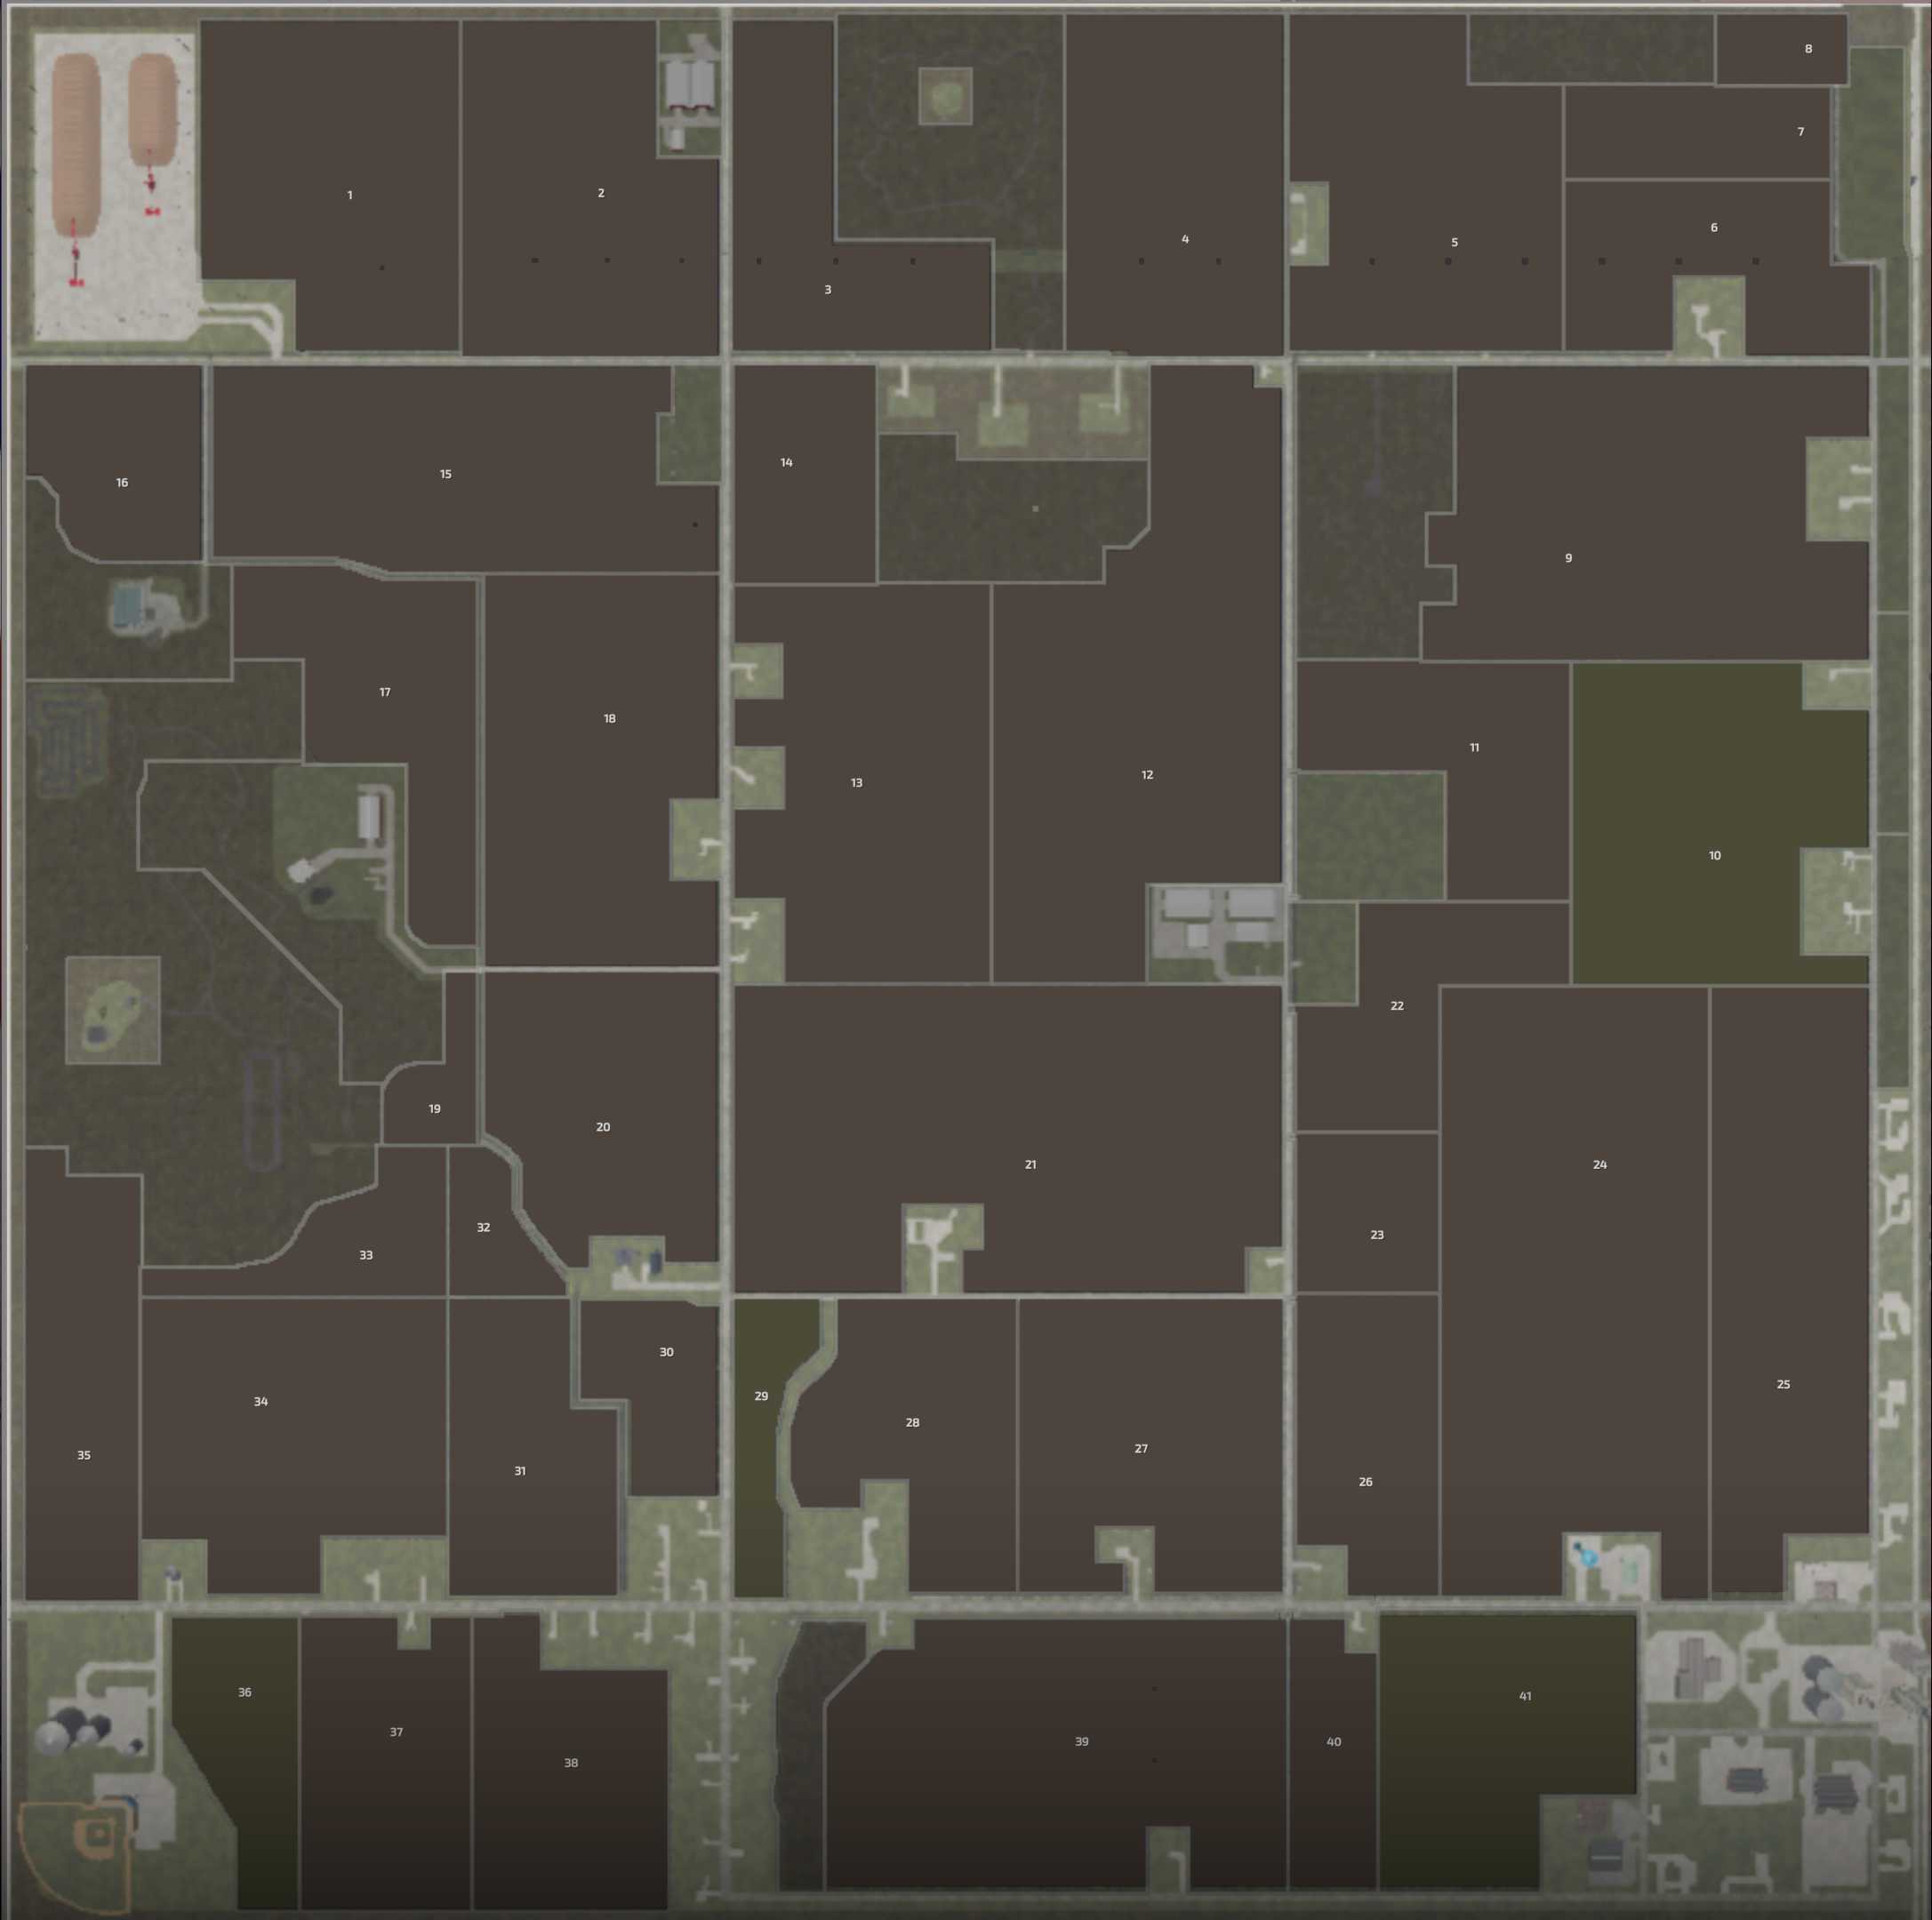 Farming Simulator 2022 Titanium Edition Map